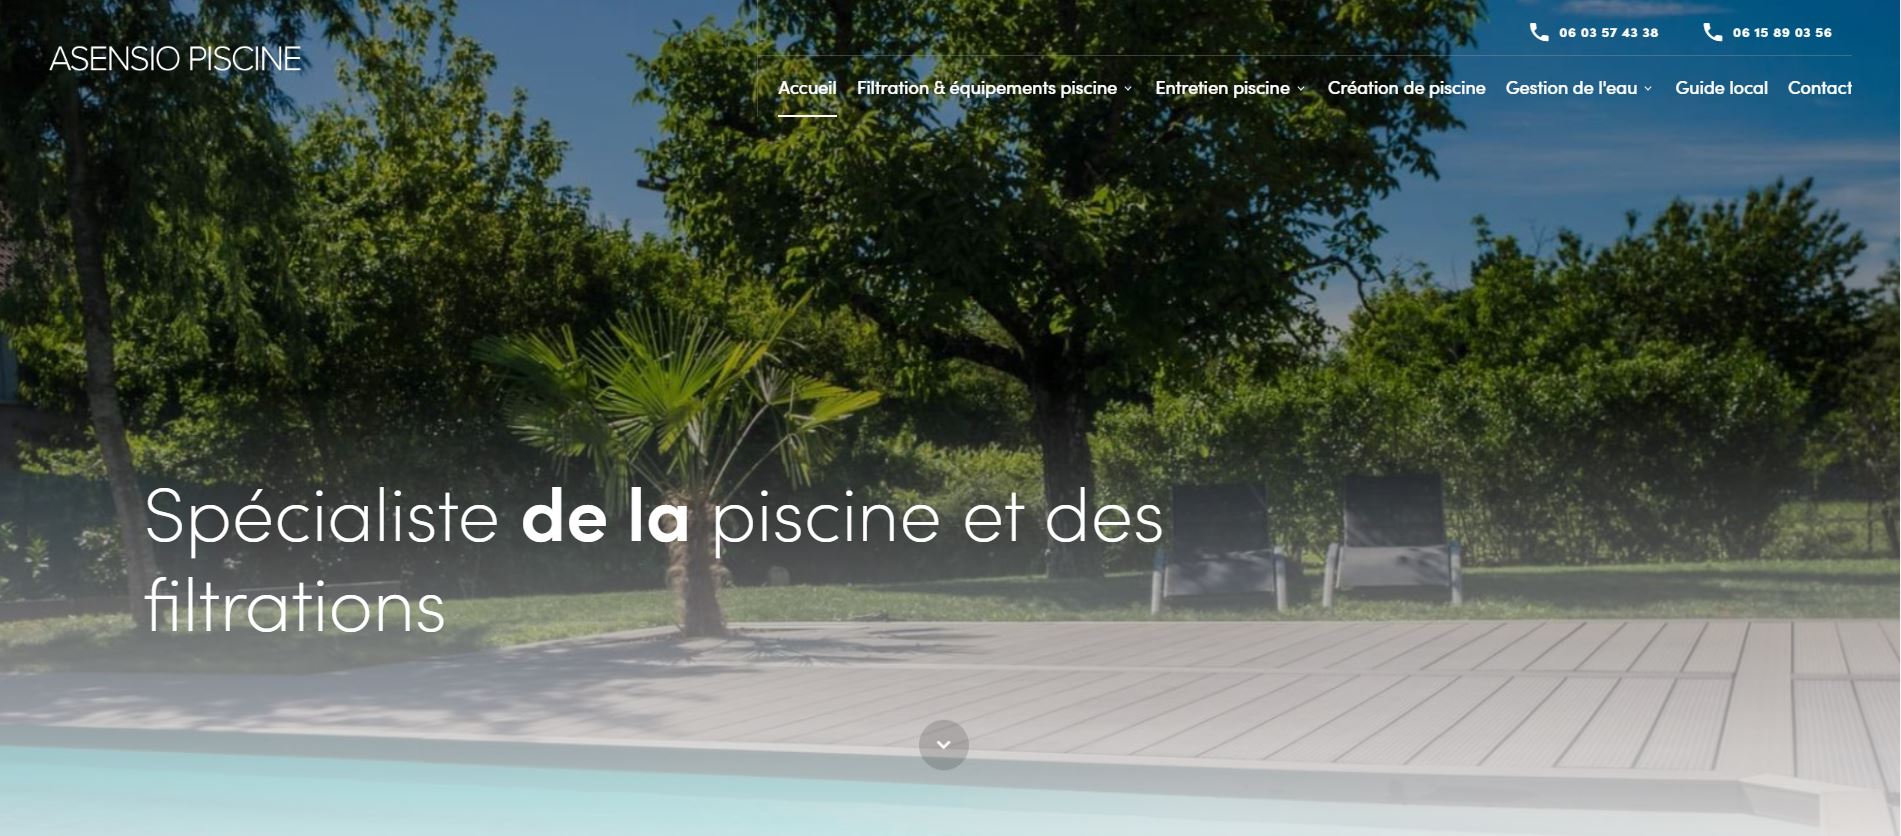 Création d’un site professionnel pour Asensio Piscine, pisciniste spécialisée nettoyage et rénovation de piscines dans le Golfe de Saint-Tropez. 